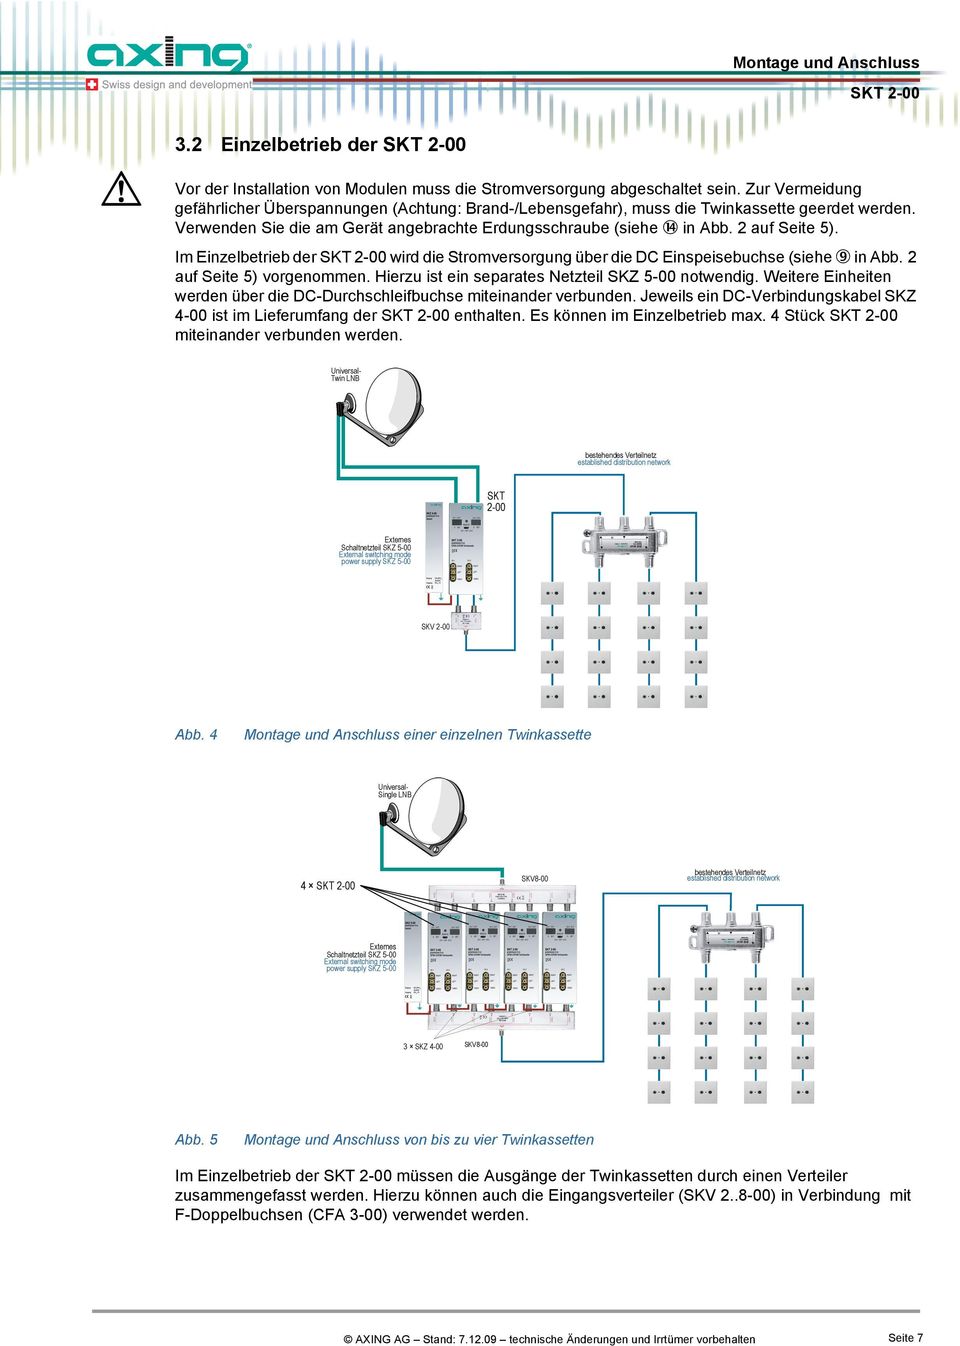 Im Einzelbetrieb der wird die Stromversorgung über die DC Einspeisebuchse (siehe in Abb. 2 auf Seite 5) vorgenommen. Hierzu ist ein separates Netzteil SKZ 5-00 notwendig.